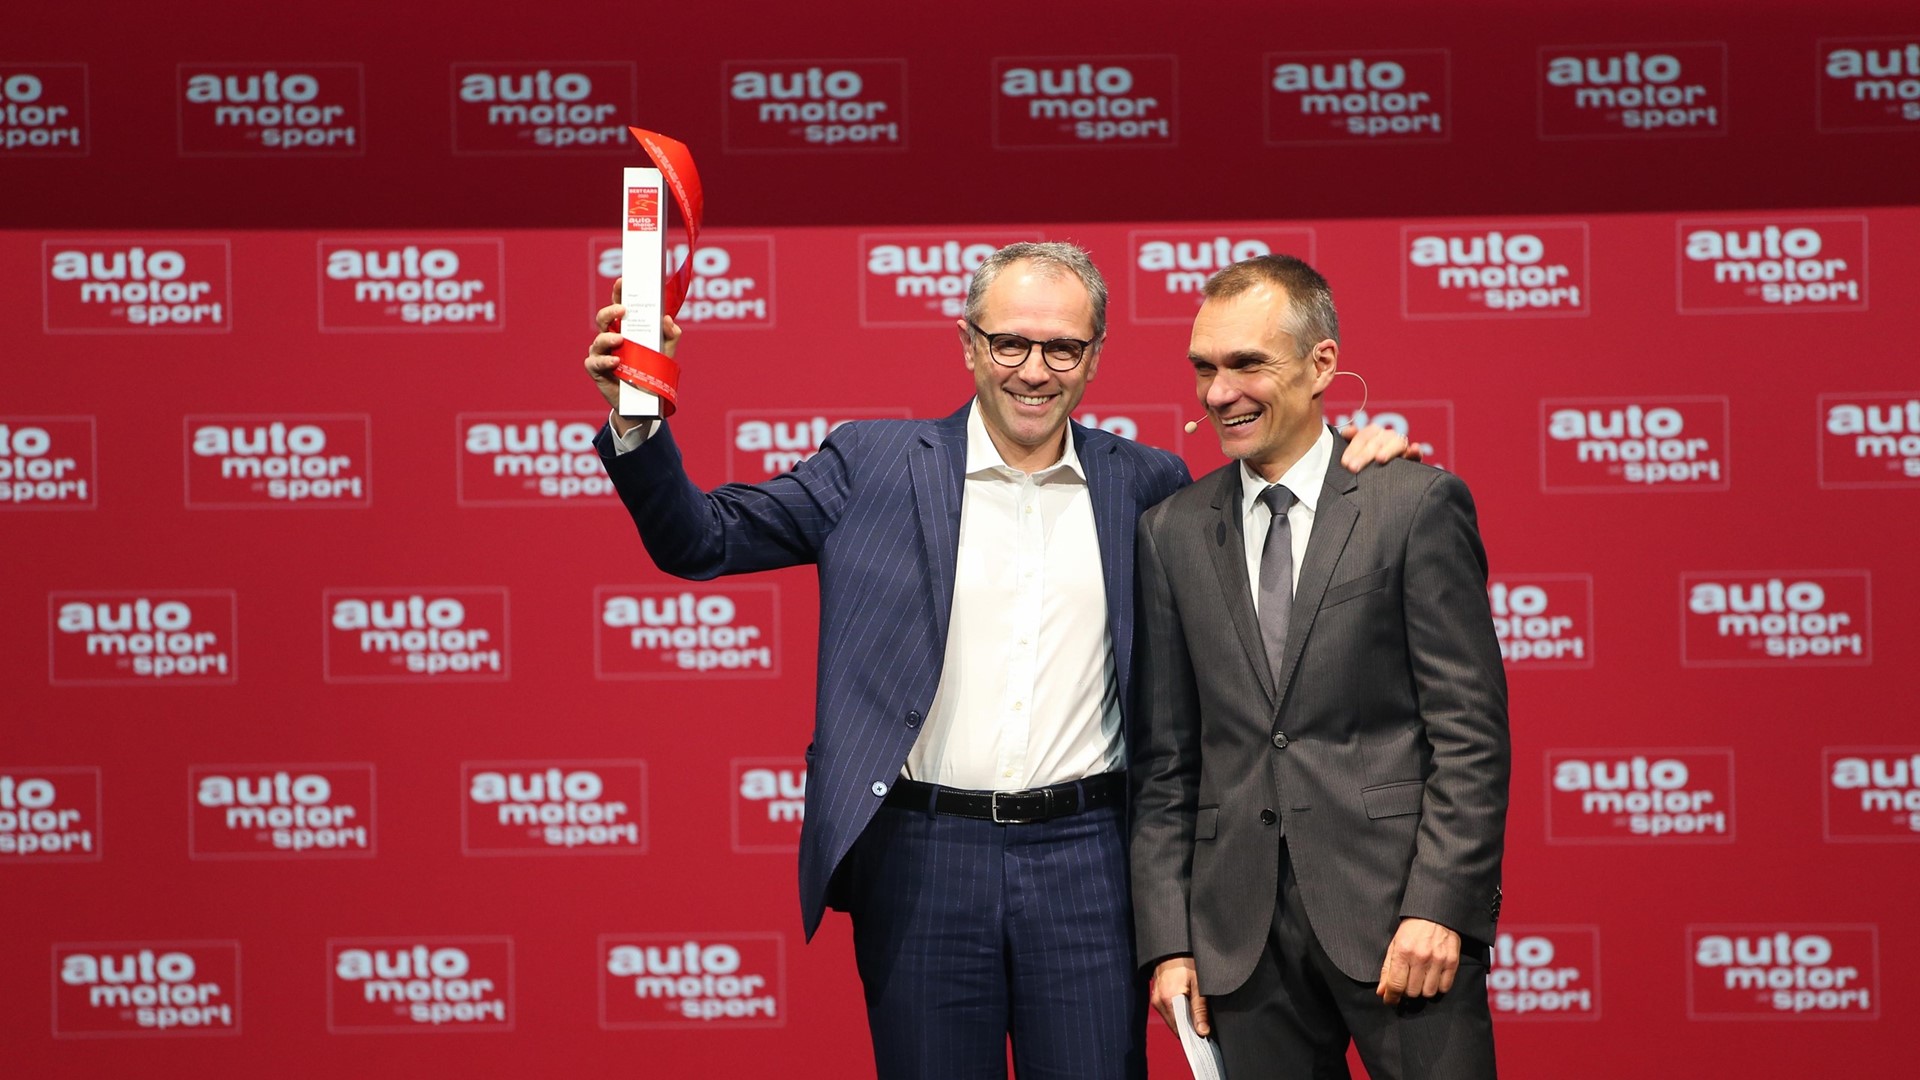 S. Domenicali receives the award in Stuttgart